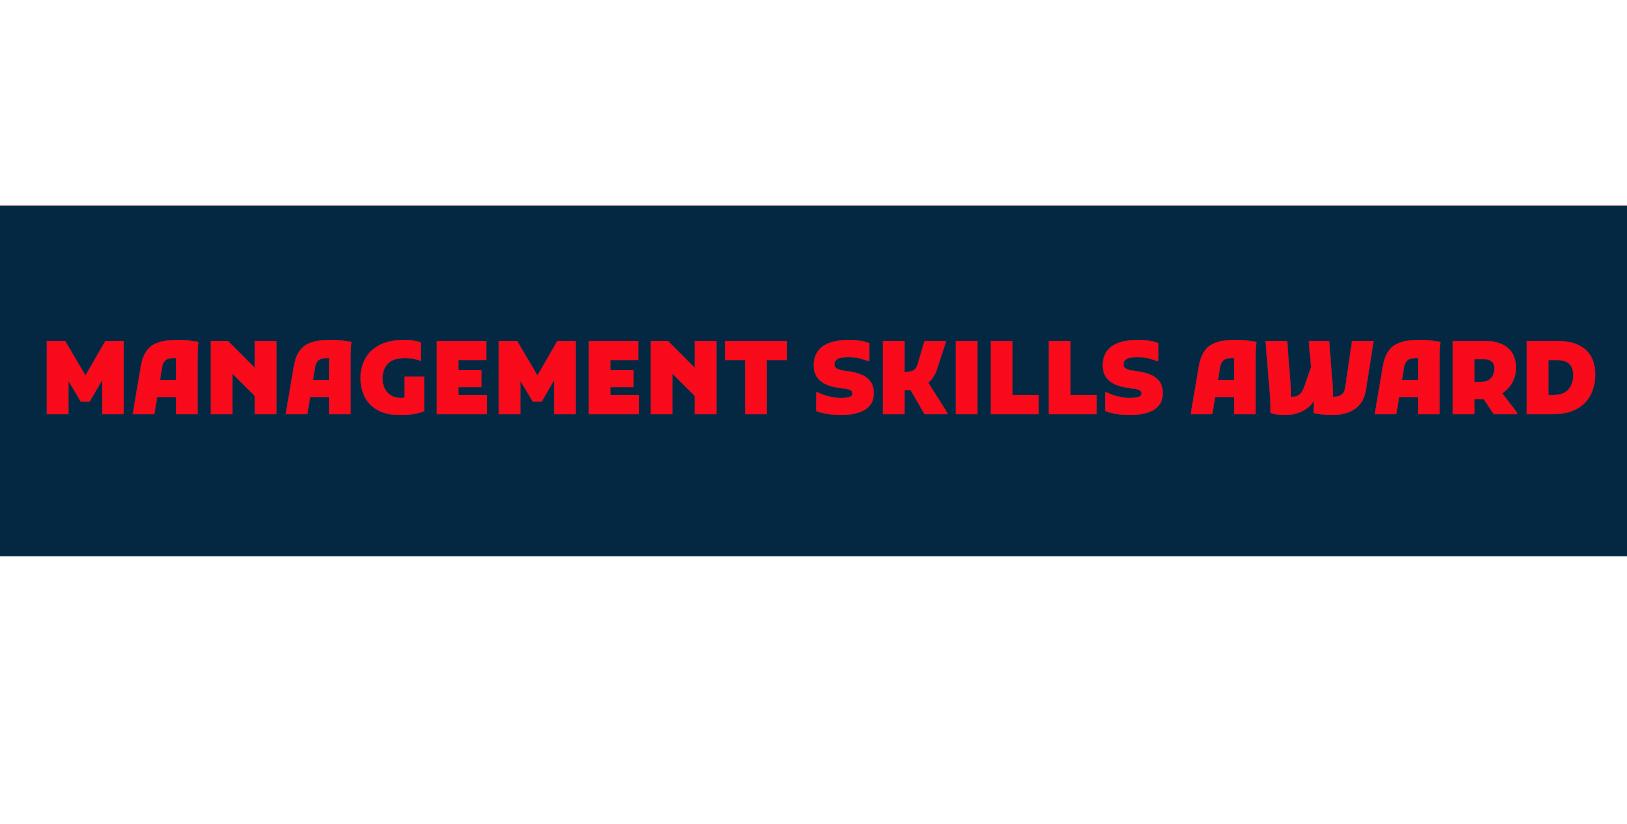 Management Skills Award Management Skills Award